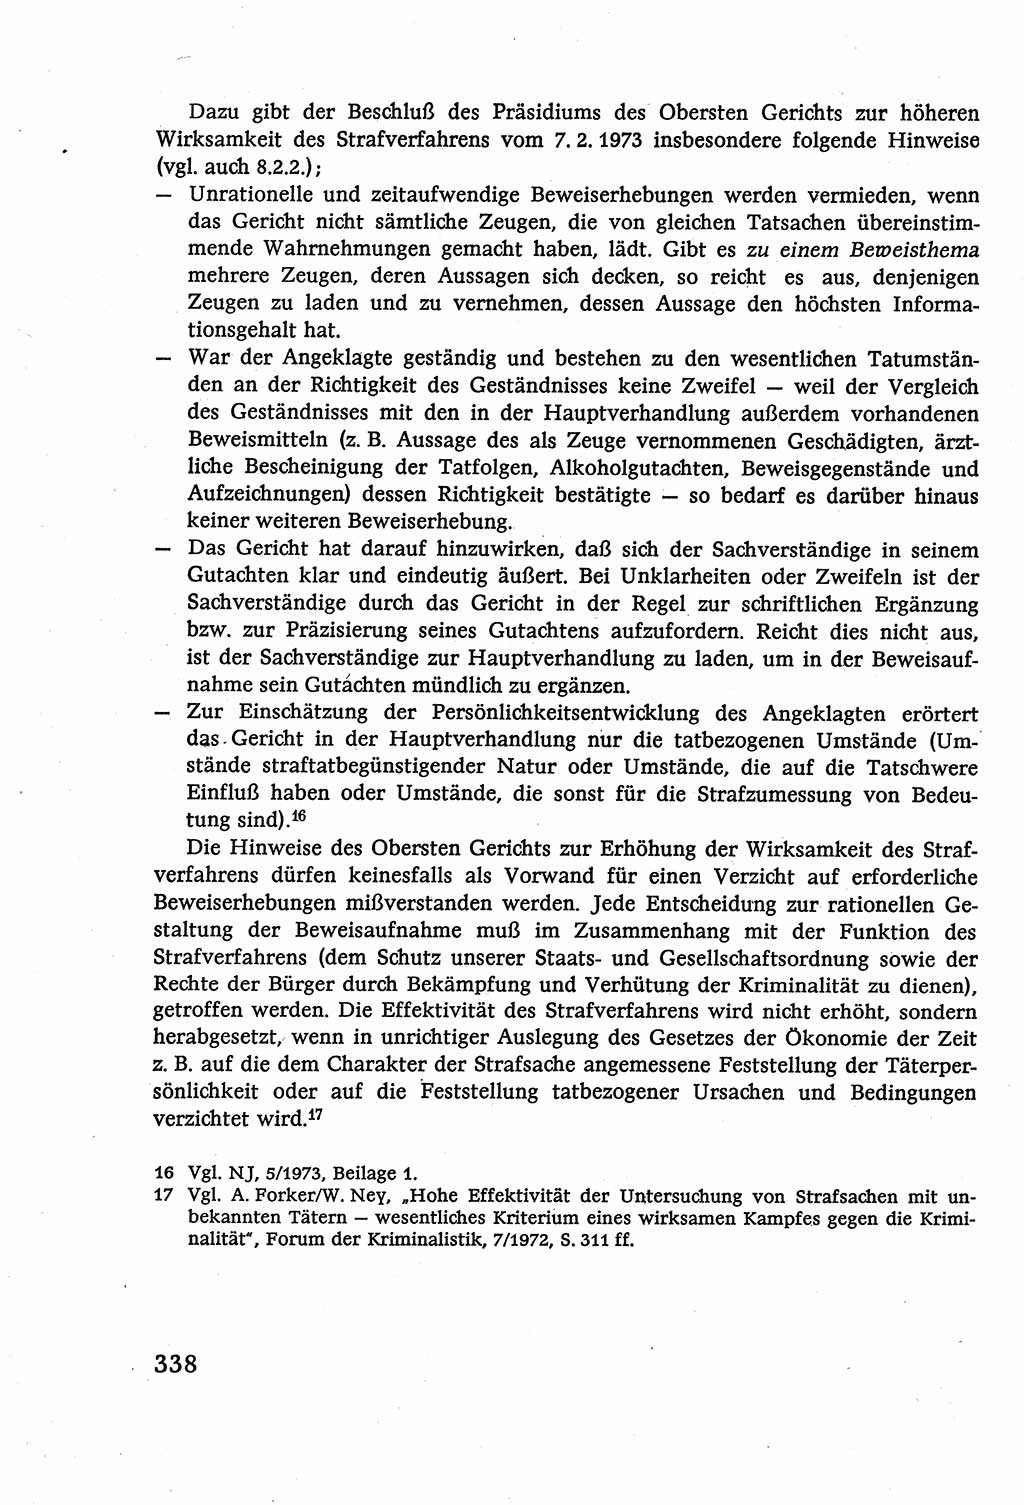 Strafverfahrensrecht [Deutsche Demokratische Republik (DDR)], Lehrbuch 1977, Seite 338 (Strafverf.-R. DDR Lb. 1977, S. 338)